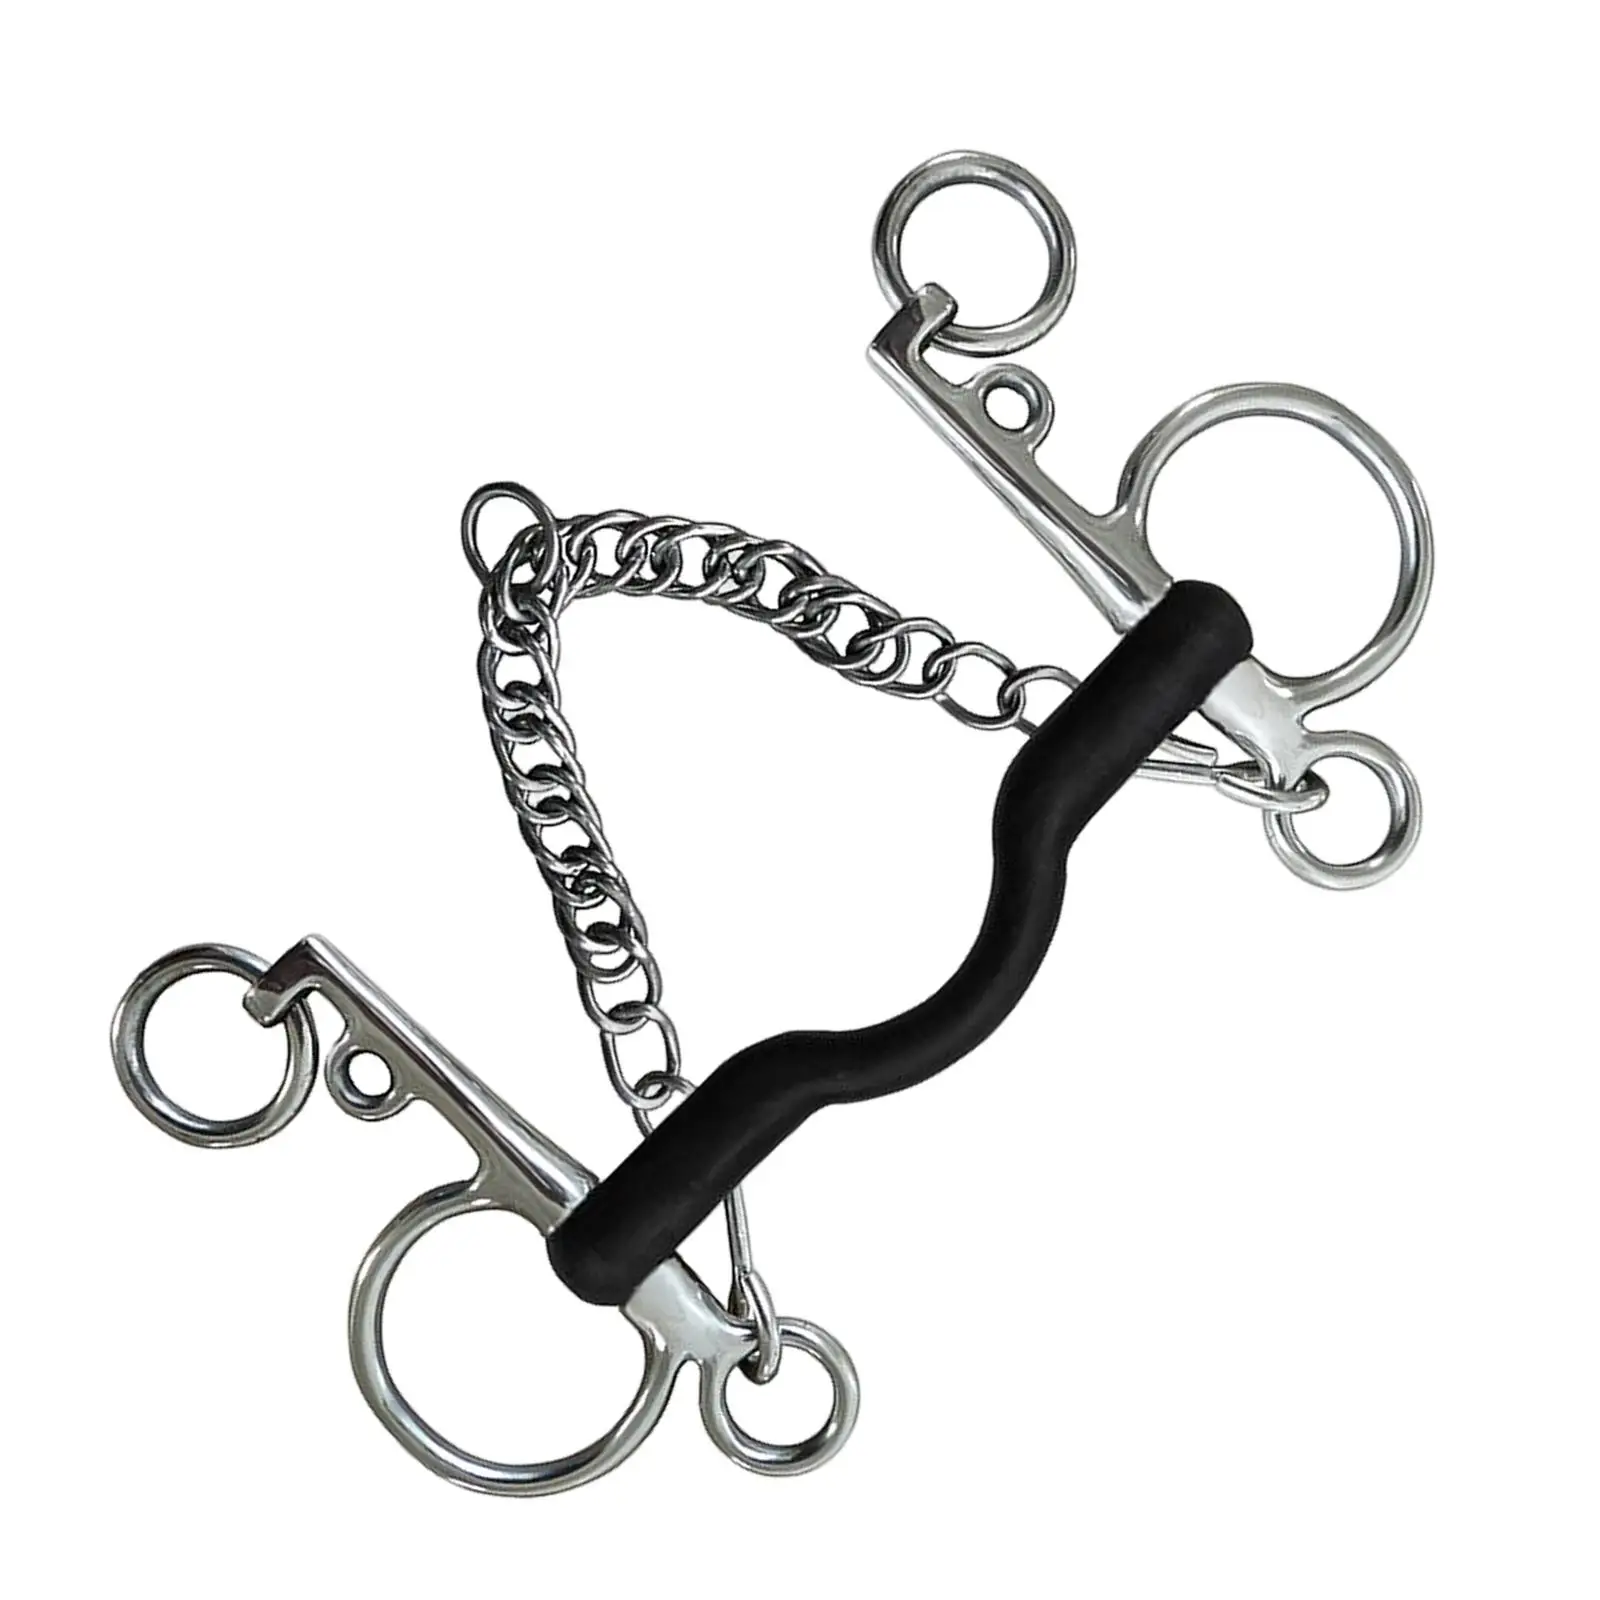 metal W/Curb Hooks Chain Mouth Cheek Training Equipment Equestrian